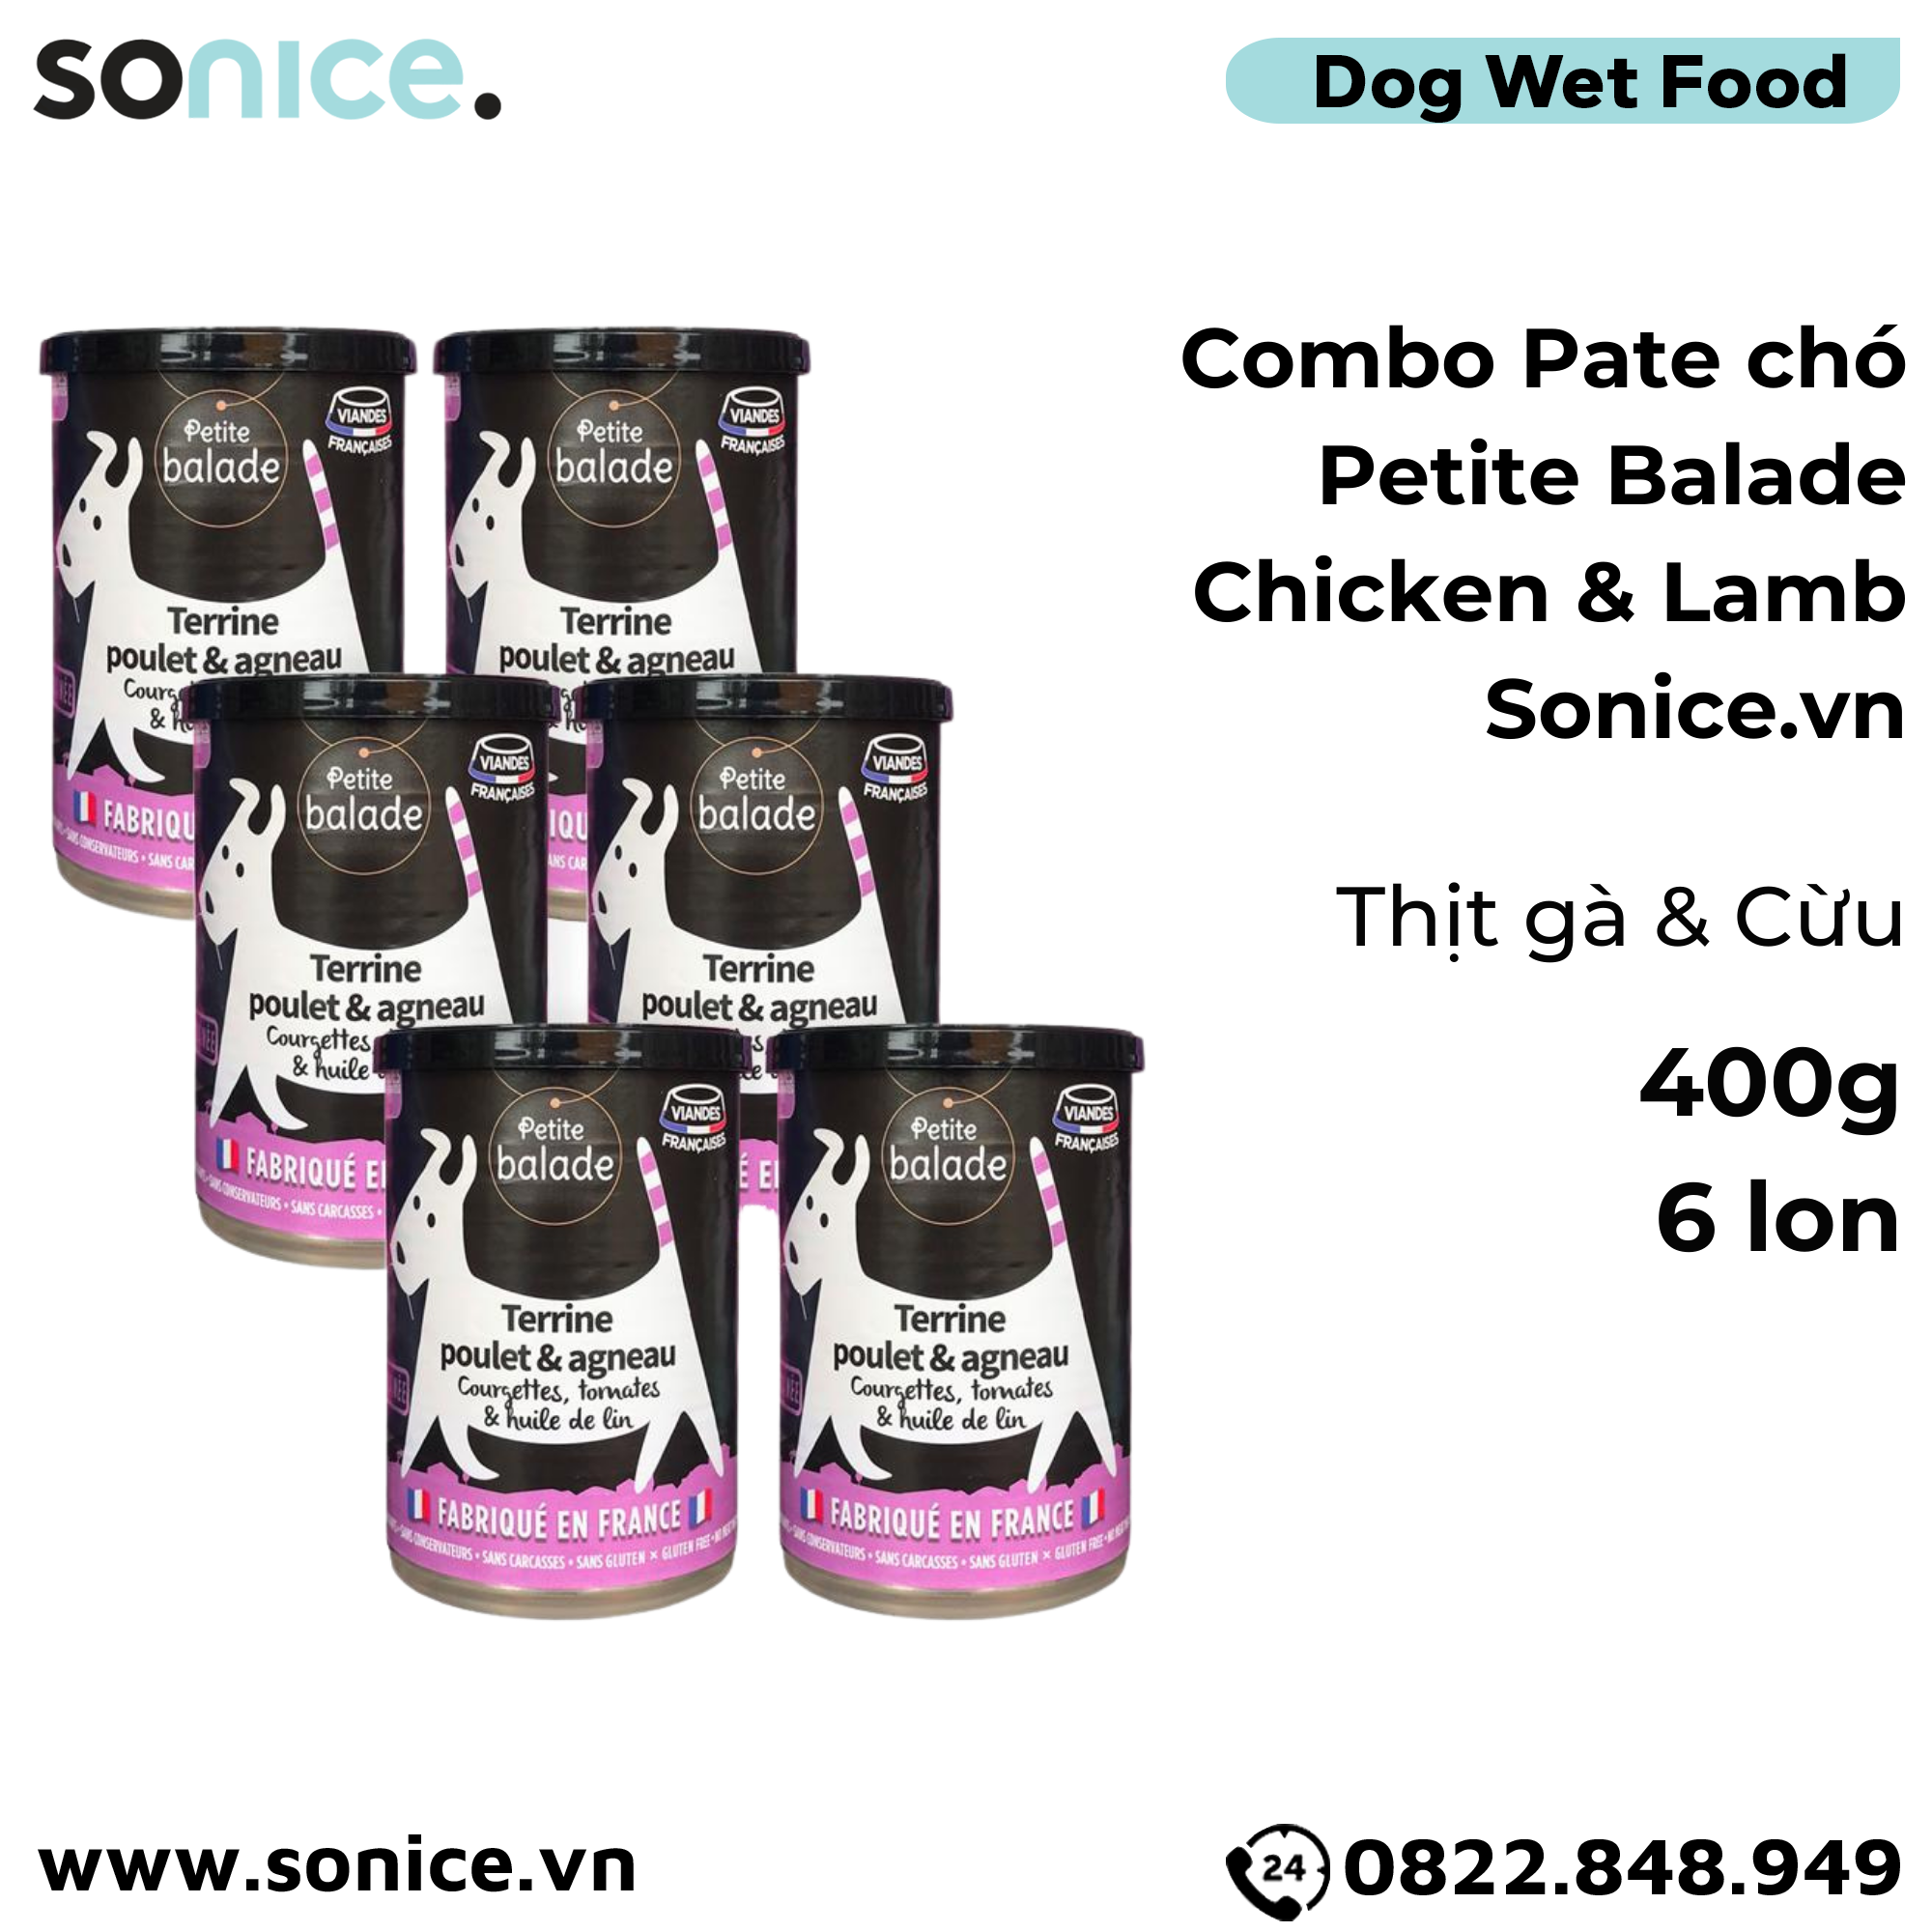  Combo Pate chó Petite Balade Chicken & Lamb 400g - 6 lon - Thịt gà và cừu SONICE. 